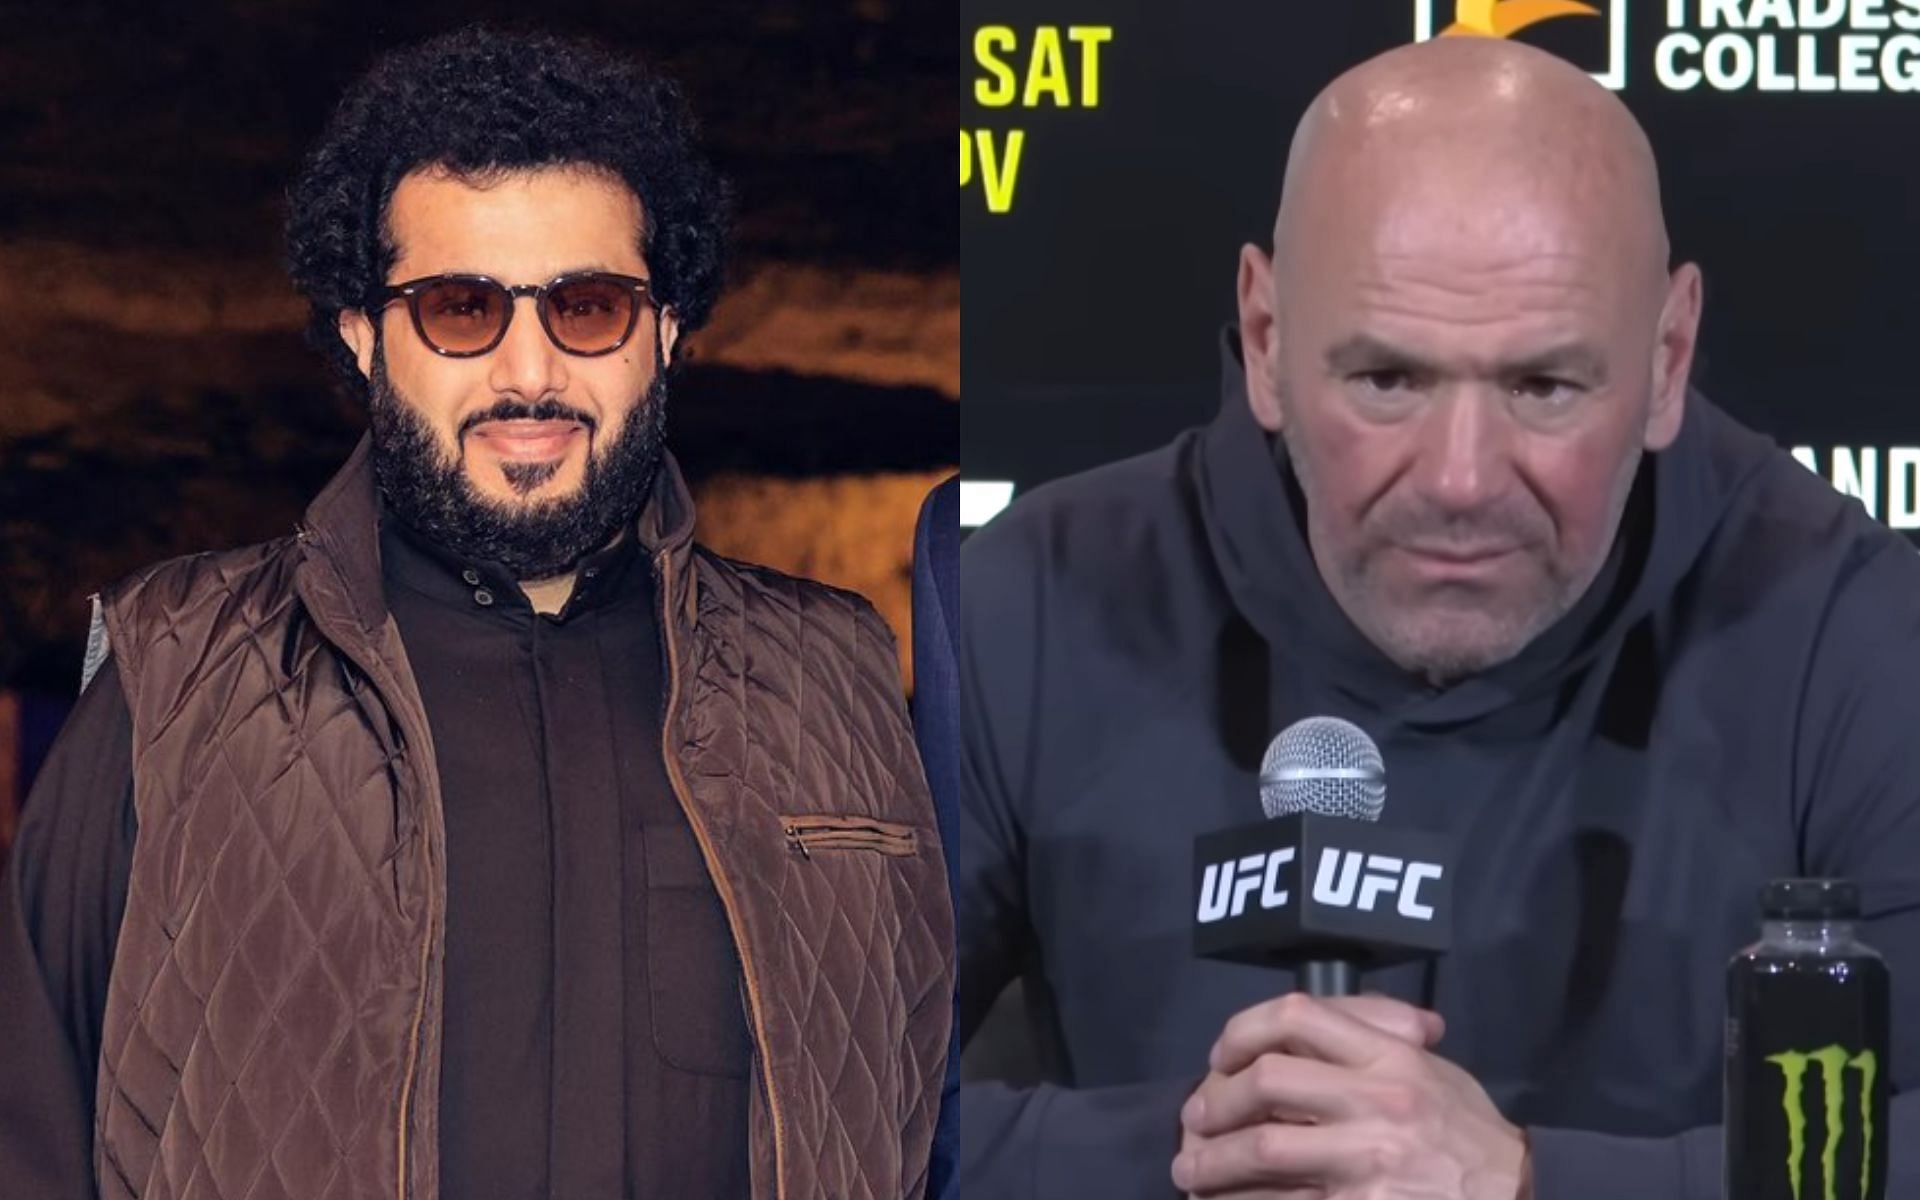 Turki Alalshikh [Left] announced official date for UFC Saudi Arabia [Dana White, right] [Image courtesy: @Turki_alalshikh - X, and UFC - YouTube]